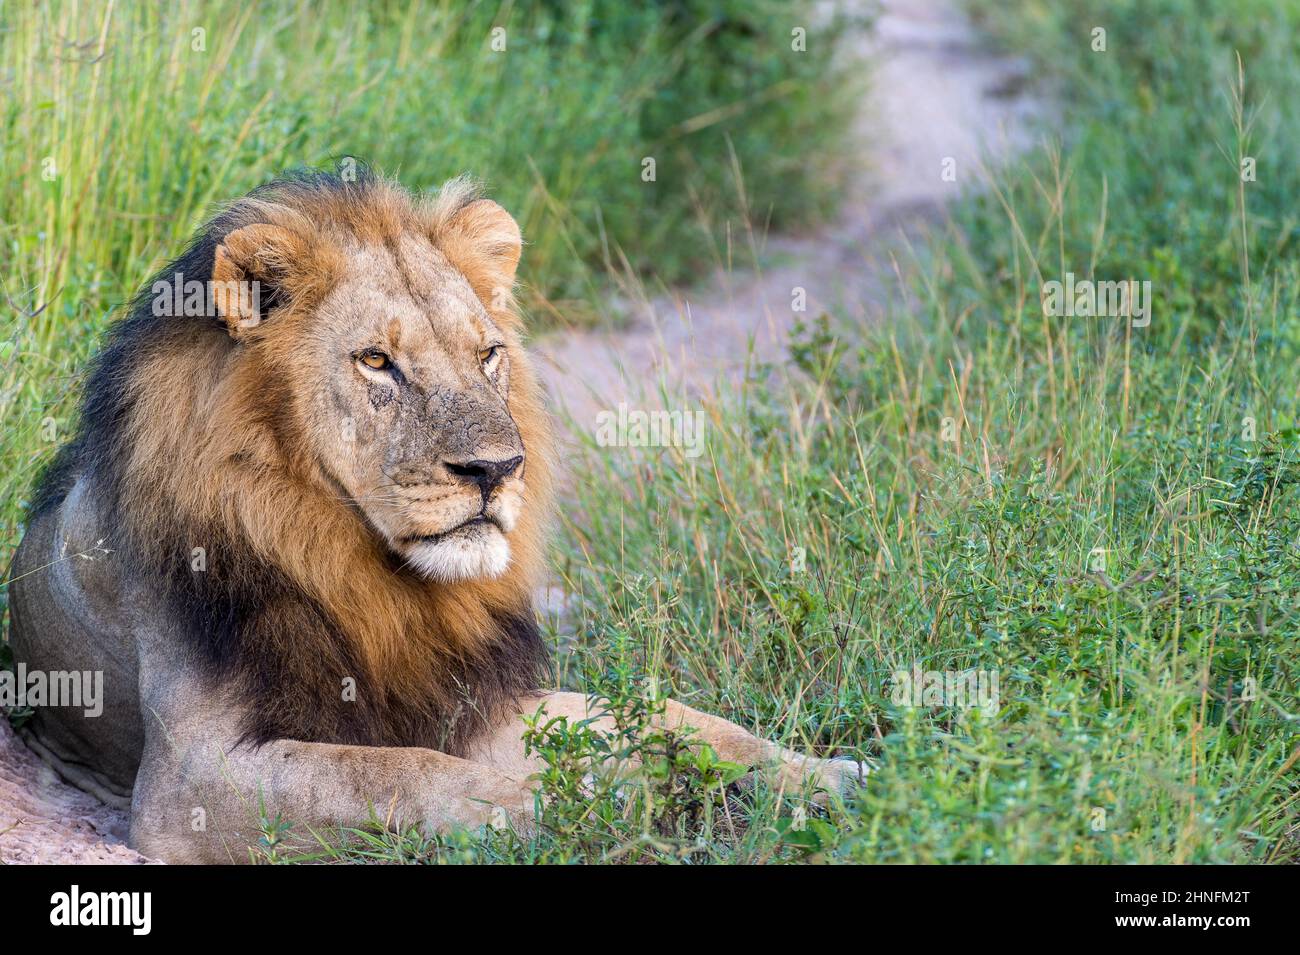 Lion (Panthera leo) allongé sur une piste de terre, camp de Mombo, Botswana Banque D'Images